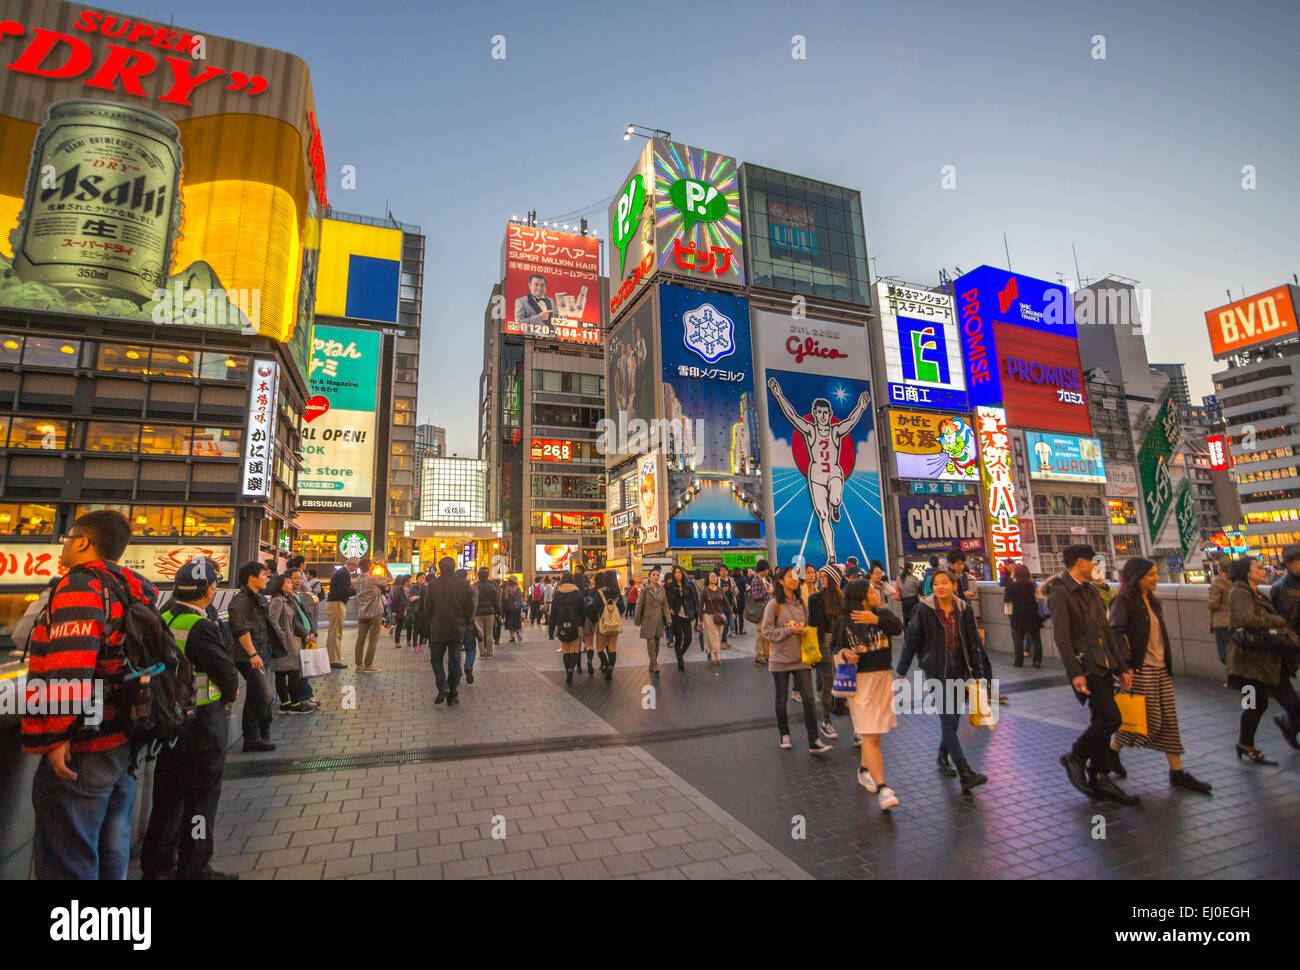 Bridge, City, Dotombori, Japan, Asia, Kansai, Namba, Osaka, architecture, colourful, commercials, advertising, downtown, entertai Stock Photo